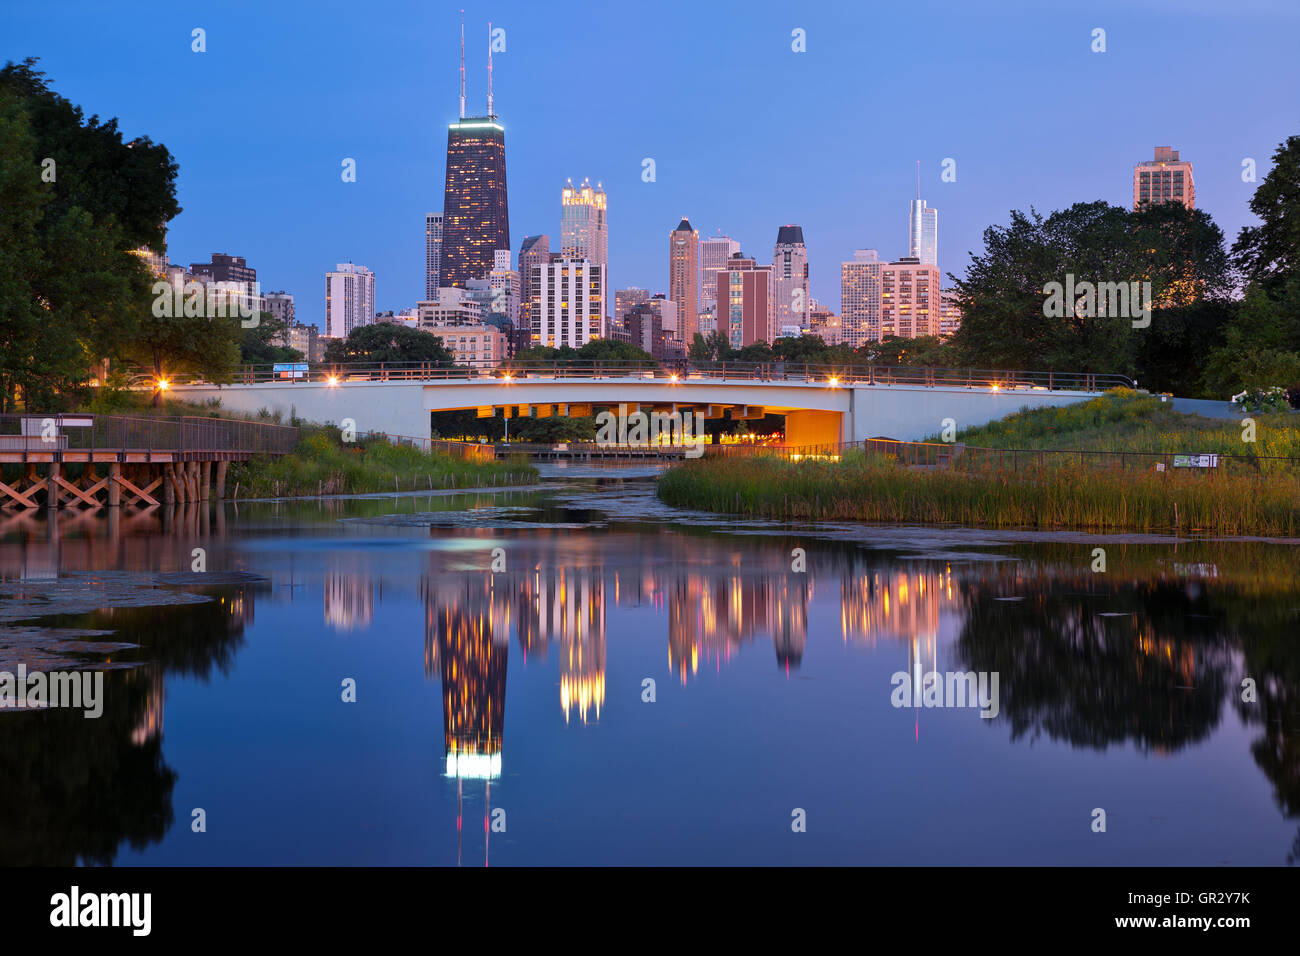 Lincoln Park di Chicago. Immagine del Chicago Downtown skyline al tramonto. Lincoln Park in primo piano. Foto Stock